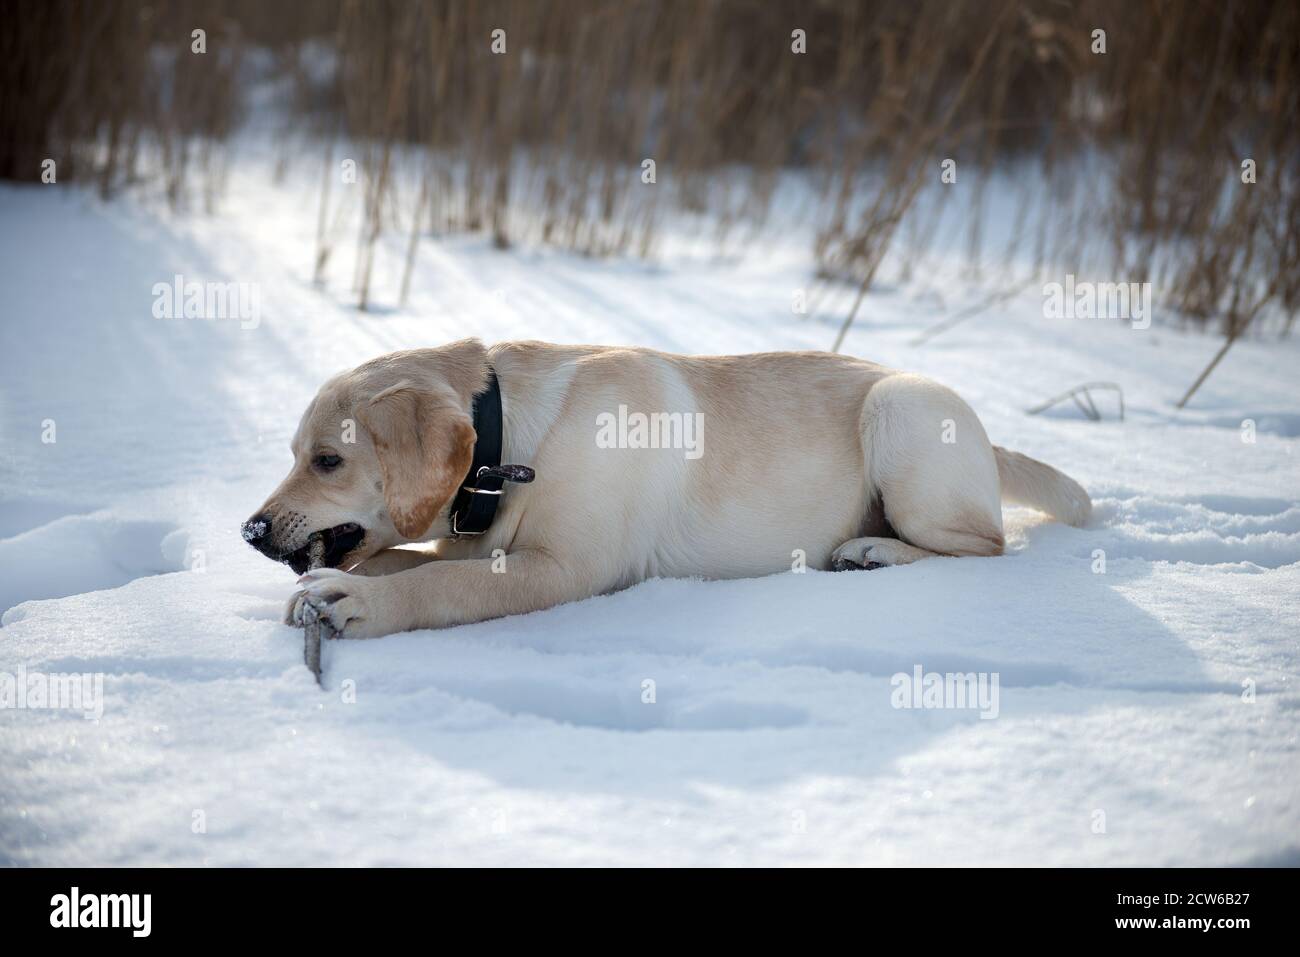 A man walks a Labrador puppy. Labrador puppy in the snow. Winter. Stock Photo